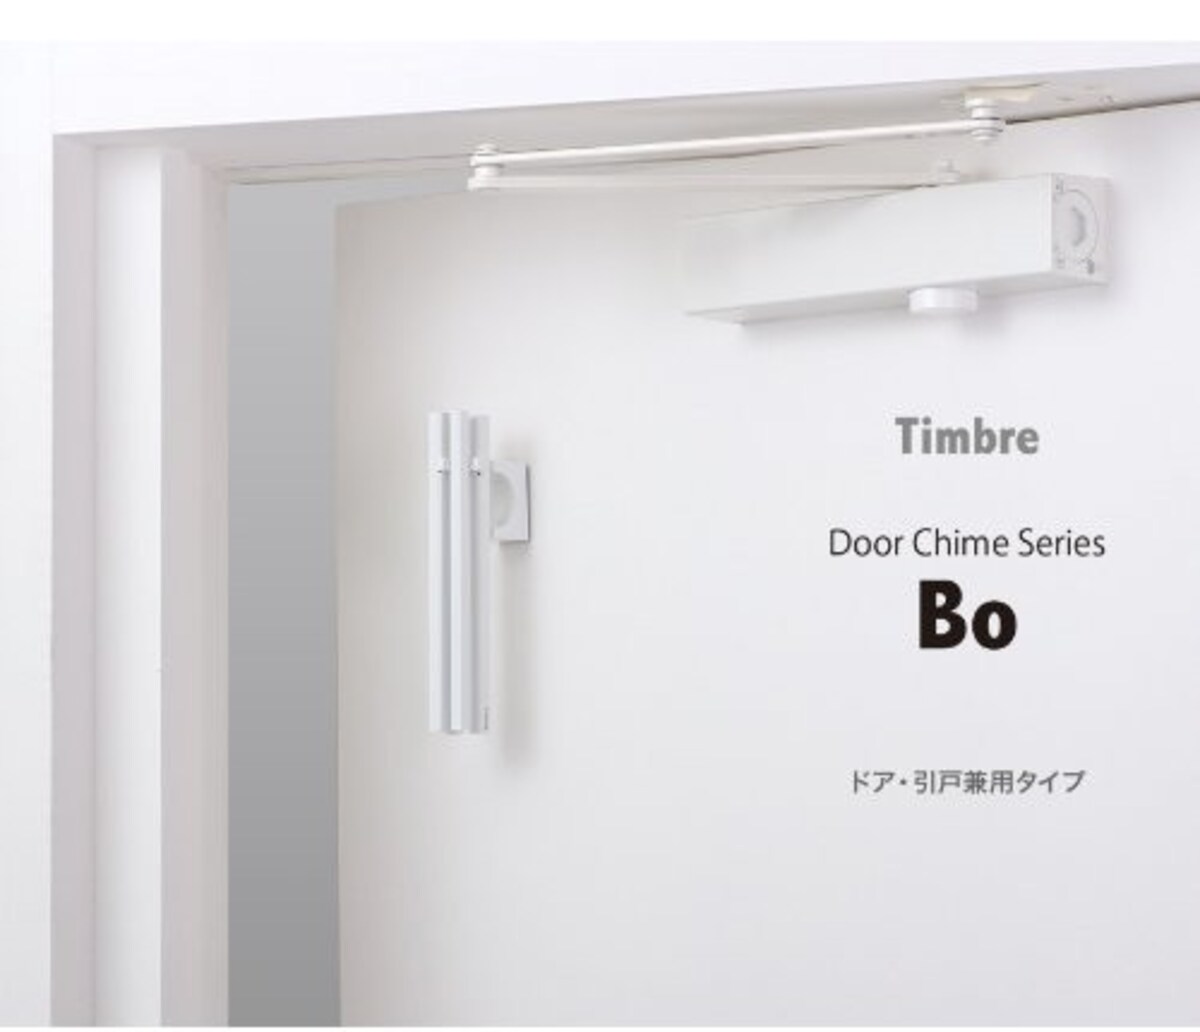 Timbre Door Chime Series　Bo 小林幹也デザイン